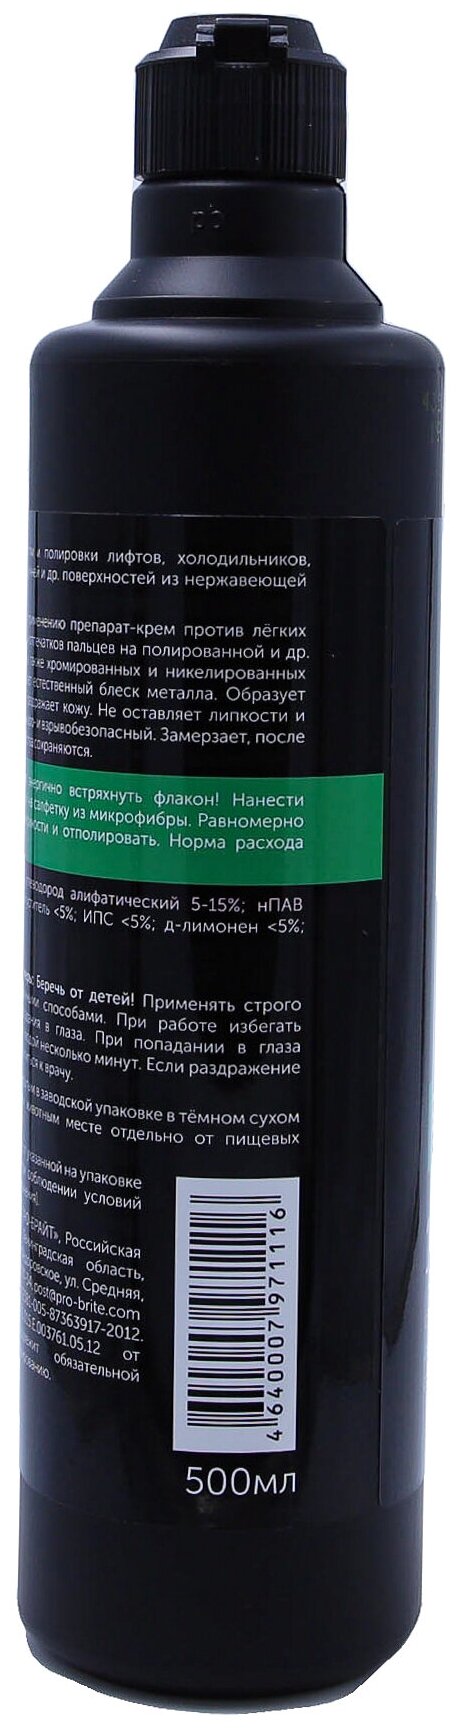 Очиститель-полироль для нержавеющей стали OLEX-1 0,5 л, средство против загрязнений и отпечатков пальцев, 5 шт. - фотография № 18